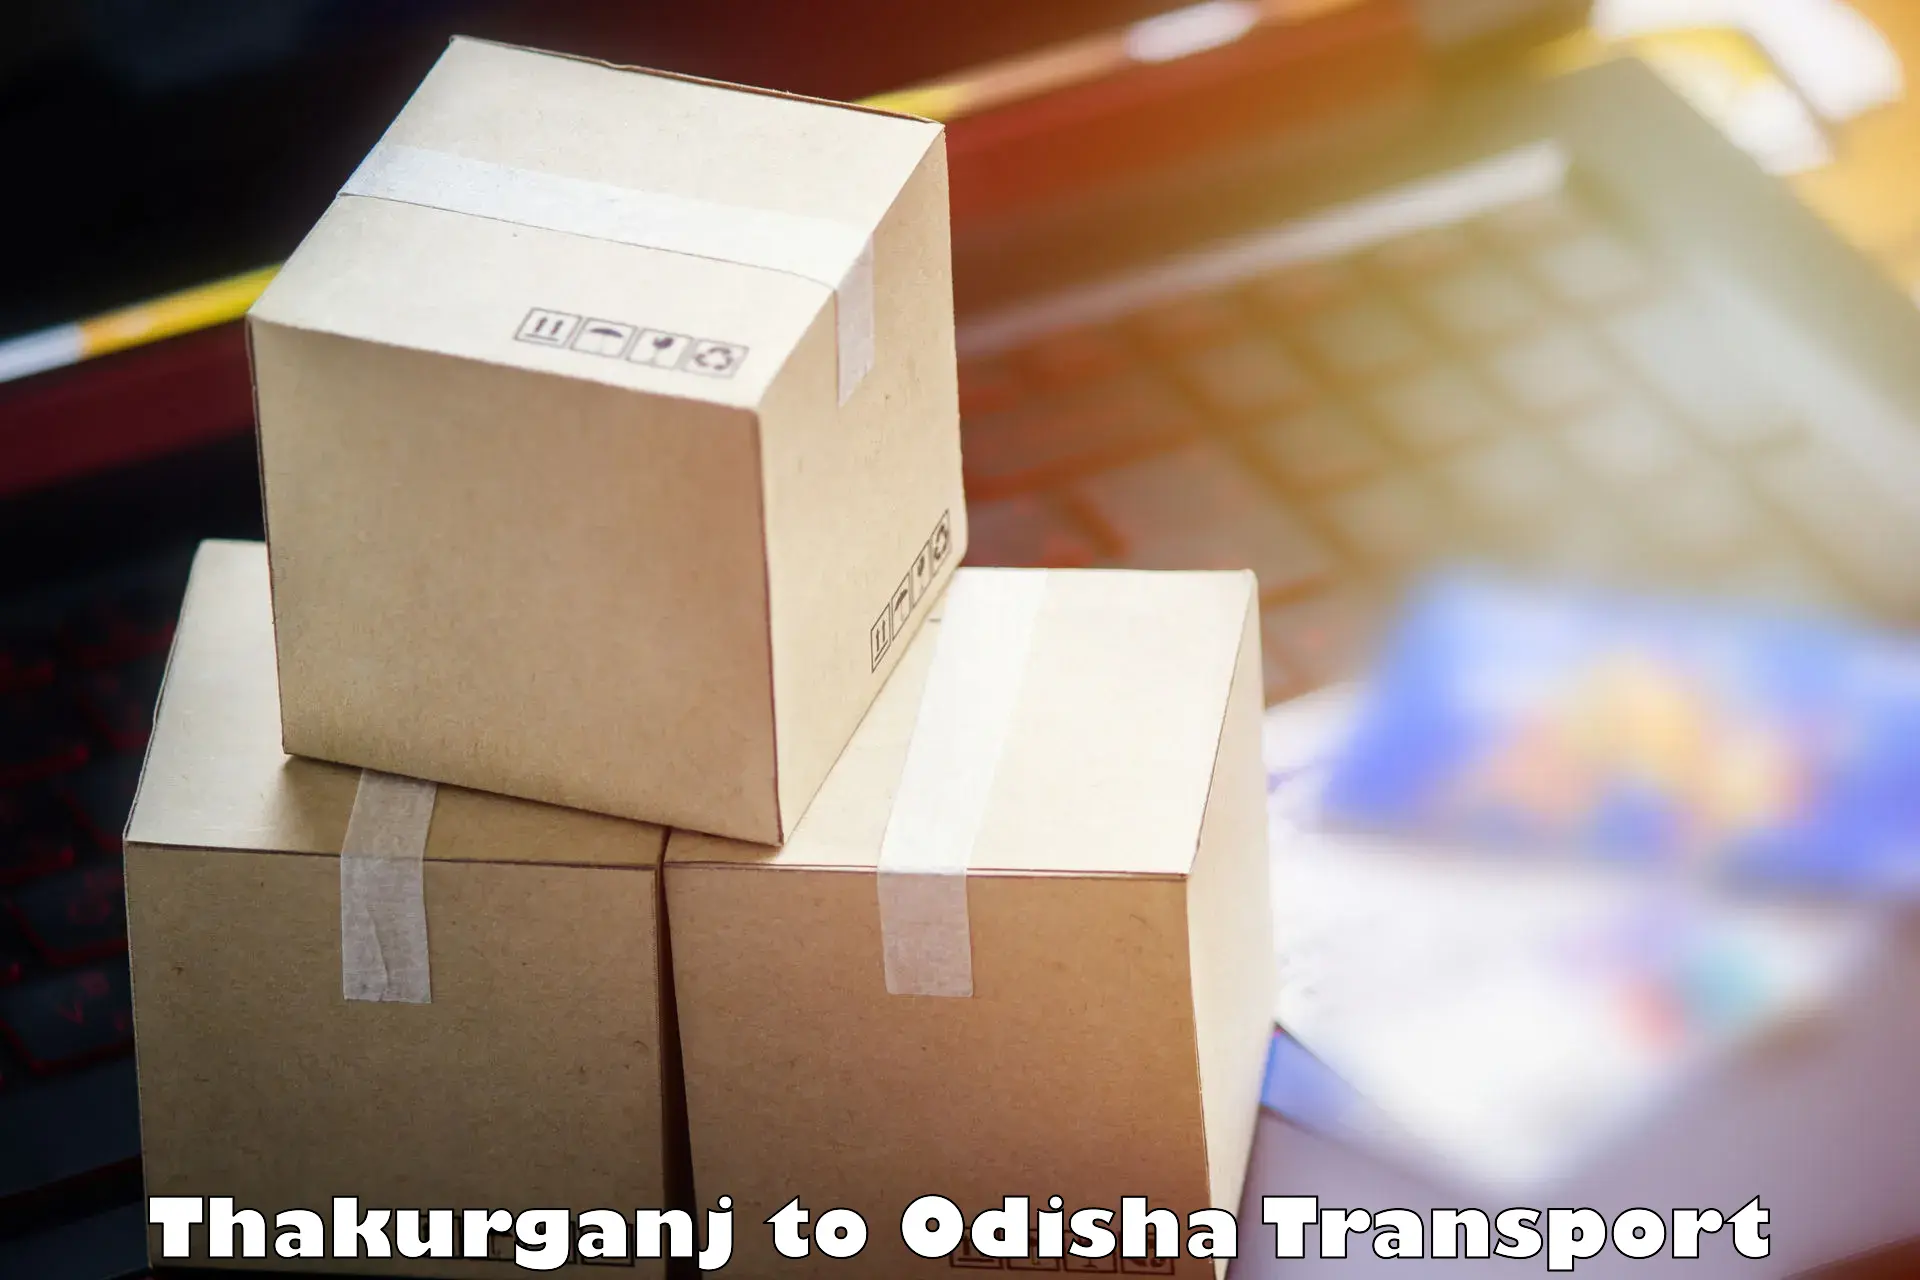 Road transport online services Thakurganj to Tikiri